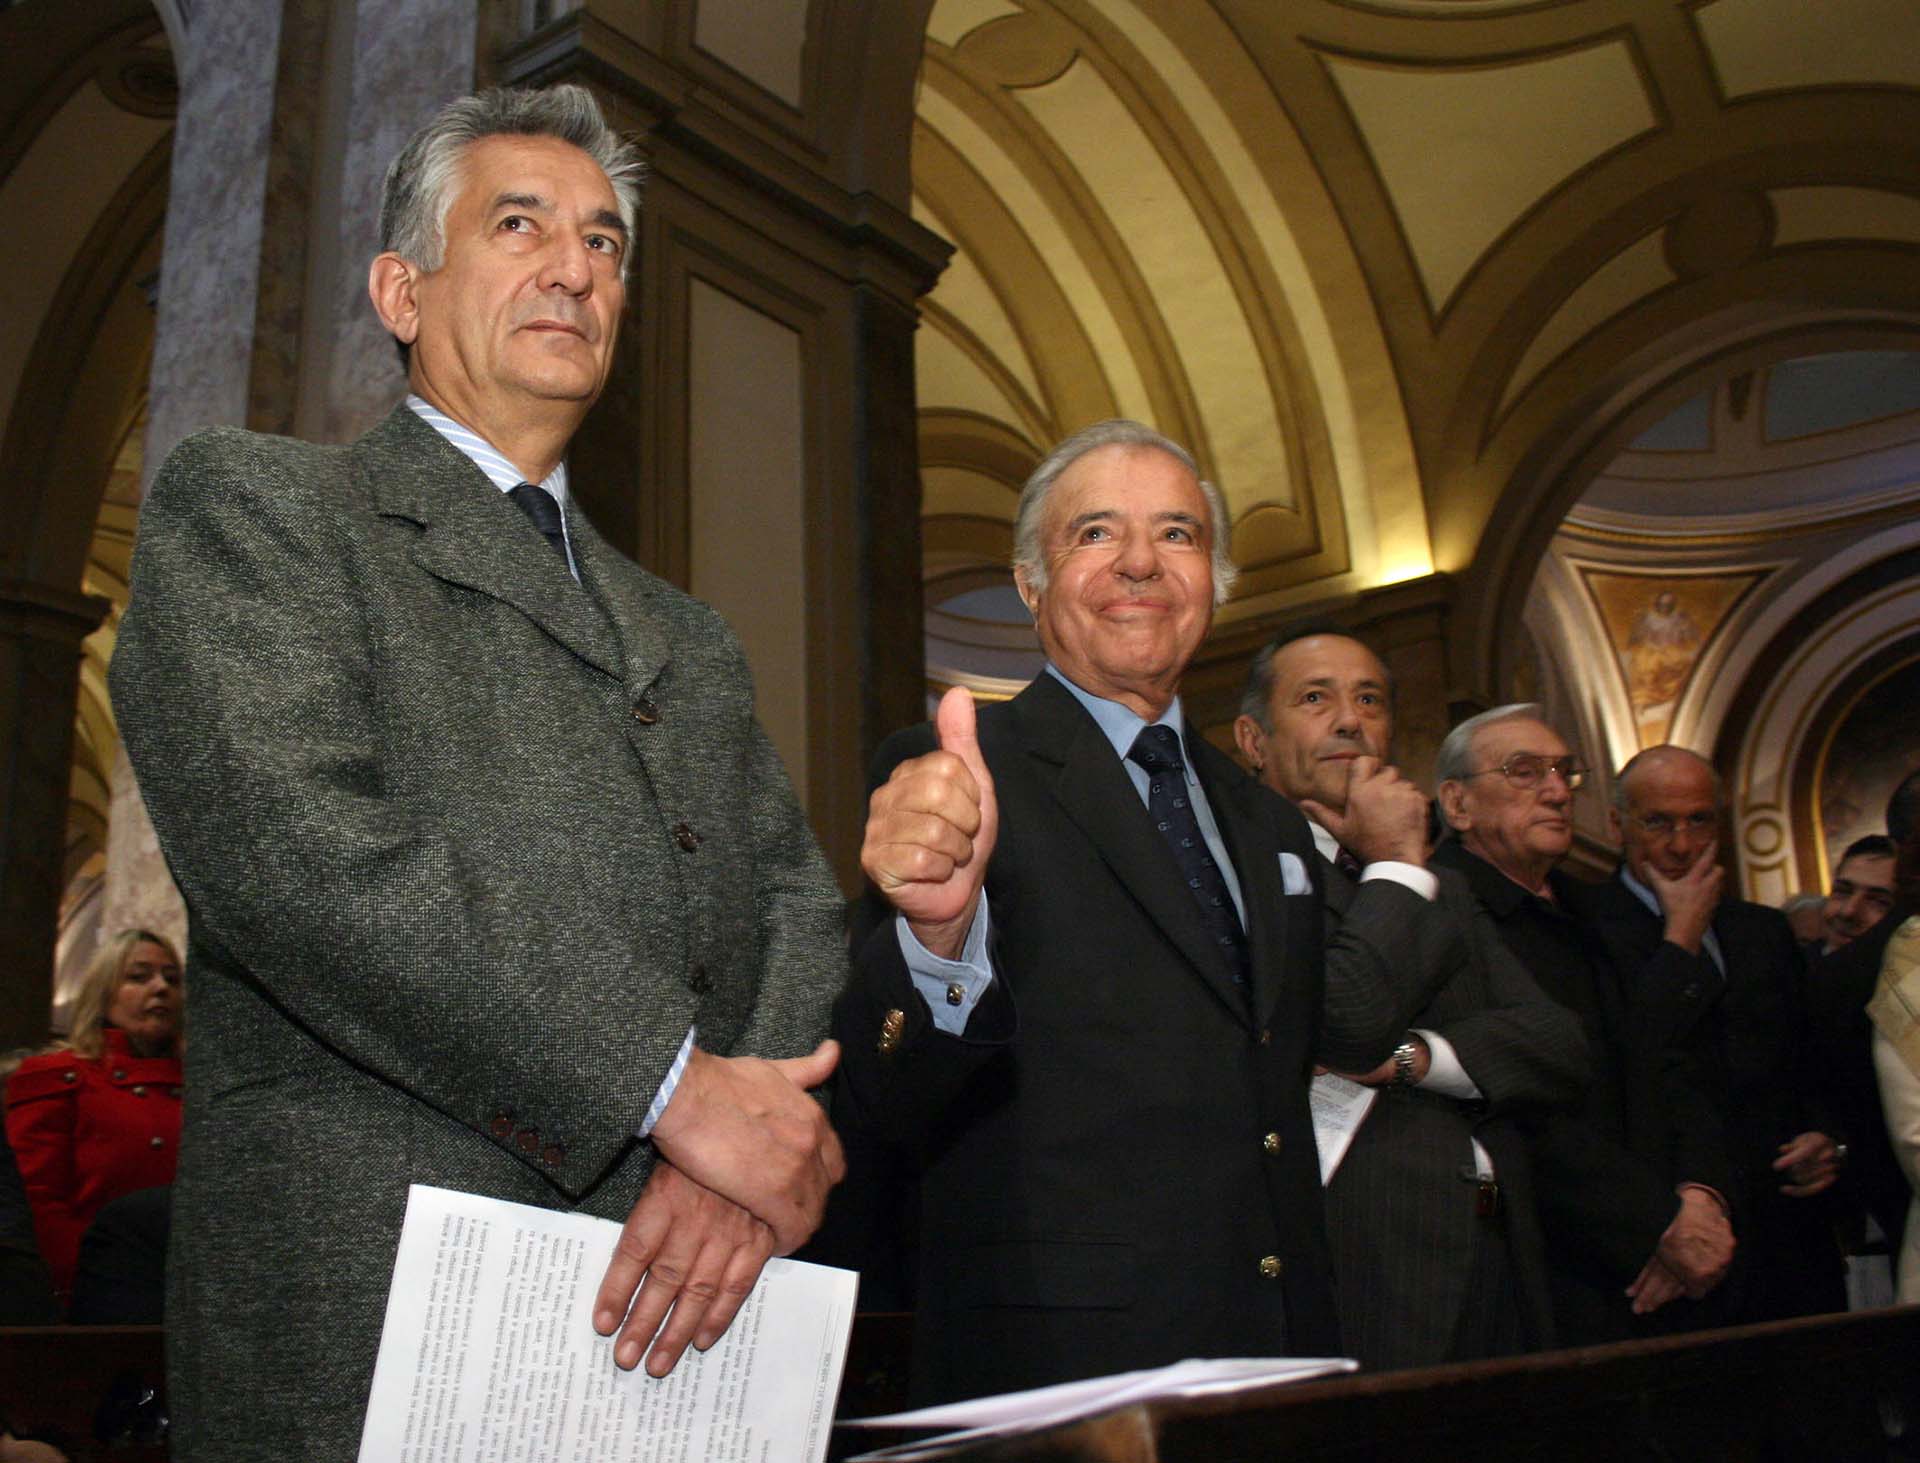 Los puntanos Alberto y Adolfo Rodiguez Saá junto al ex presidente Carlos Menem, durante la misa en memoria de José Ignacio Rucci en la Catedral Metropolitana